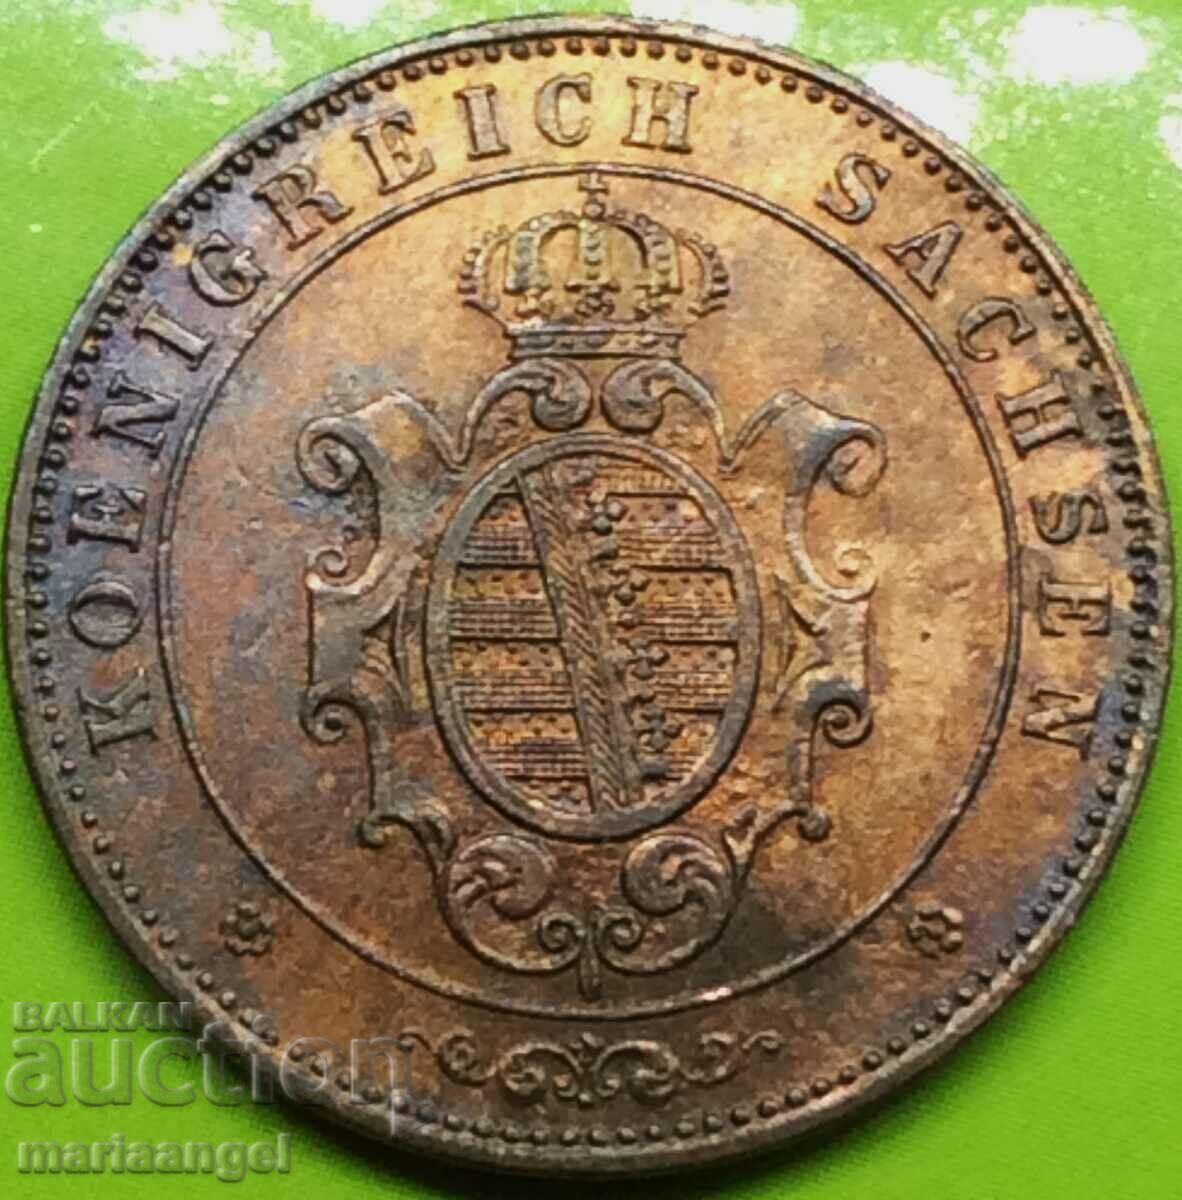 Saxony 5 pfennig 1862 copper